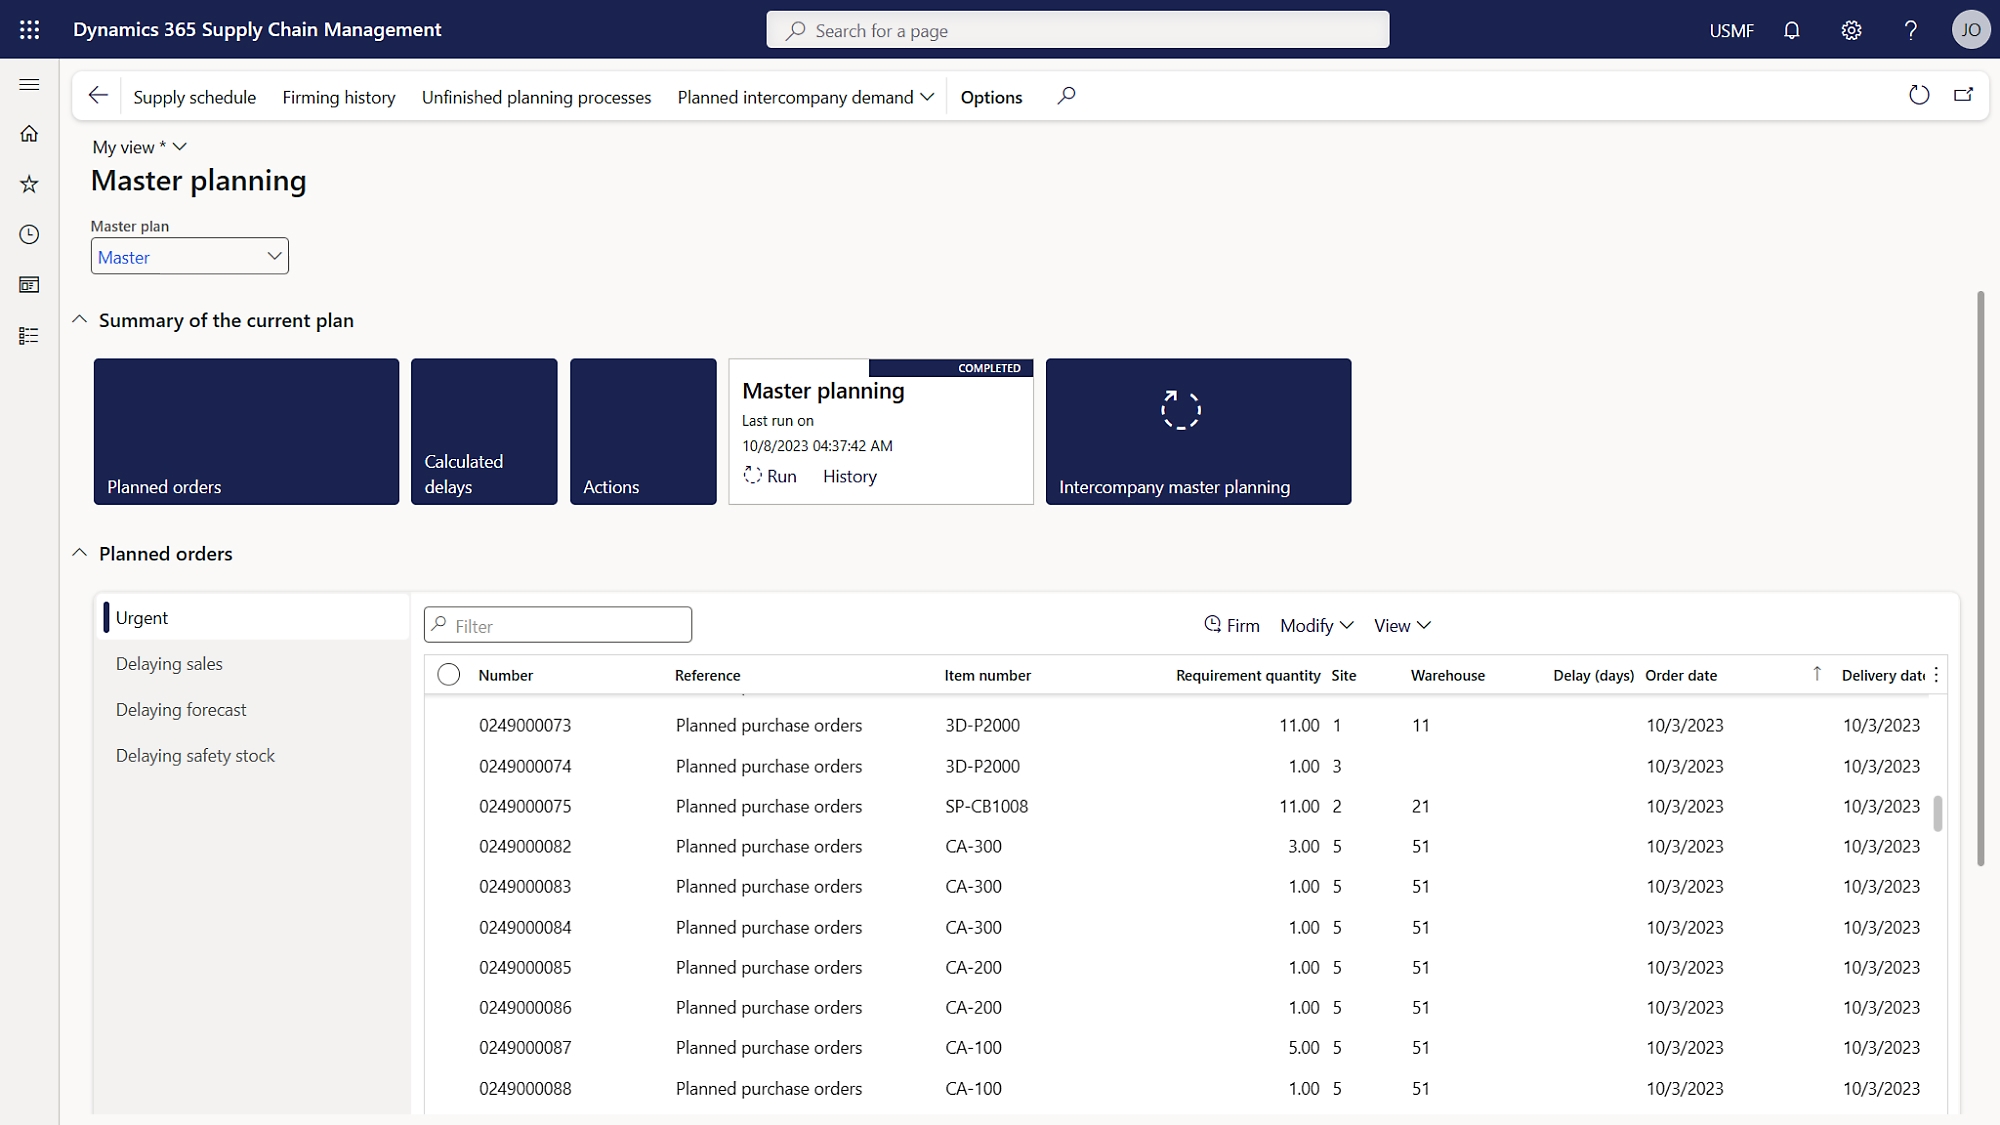 Снимок экрана панели мониторинга бизнес-аналитики, на которой показаны данные в формате строк.